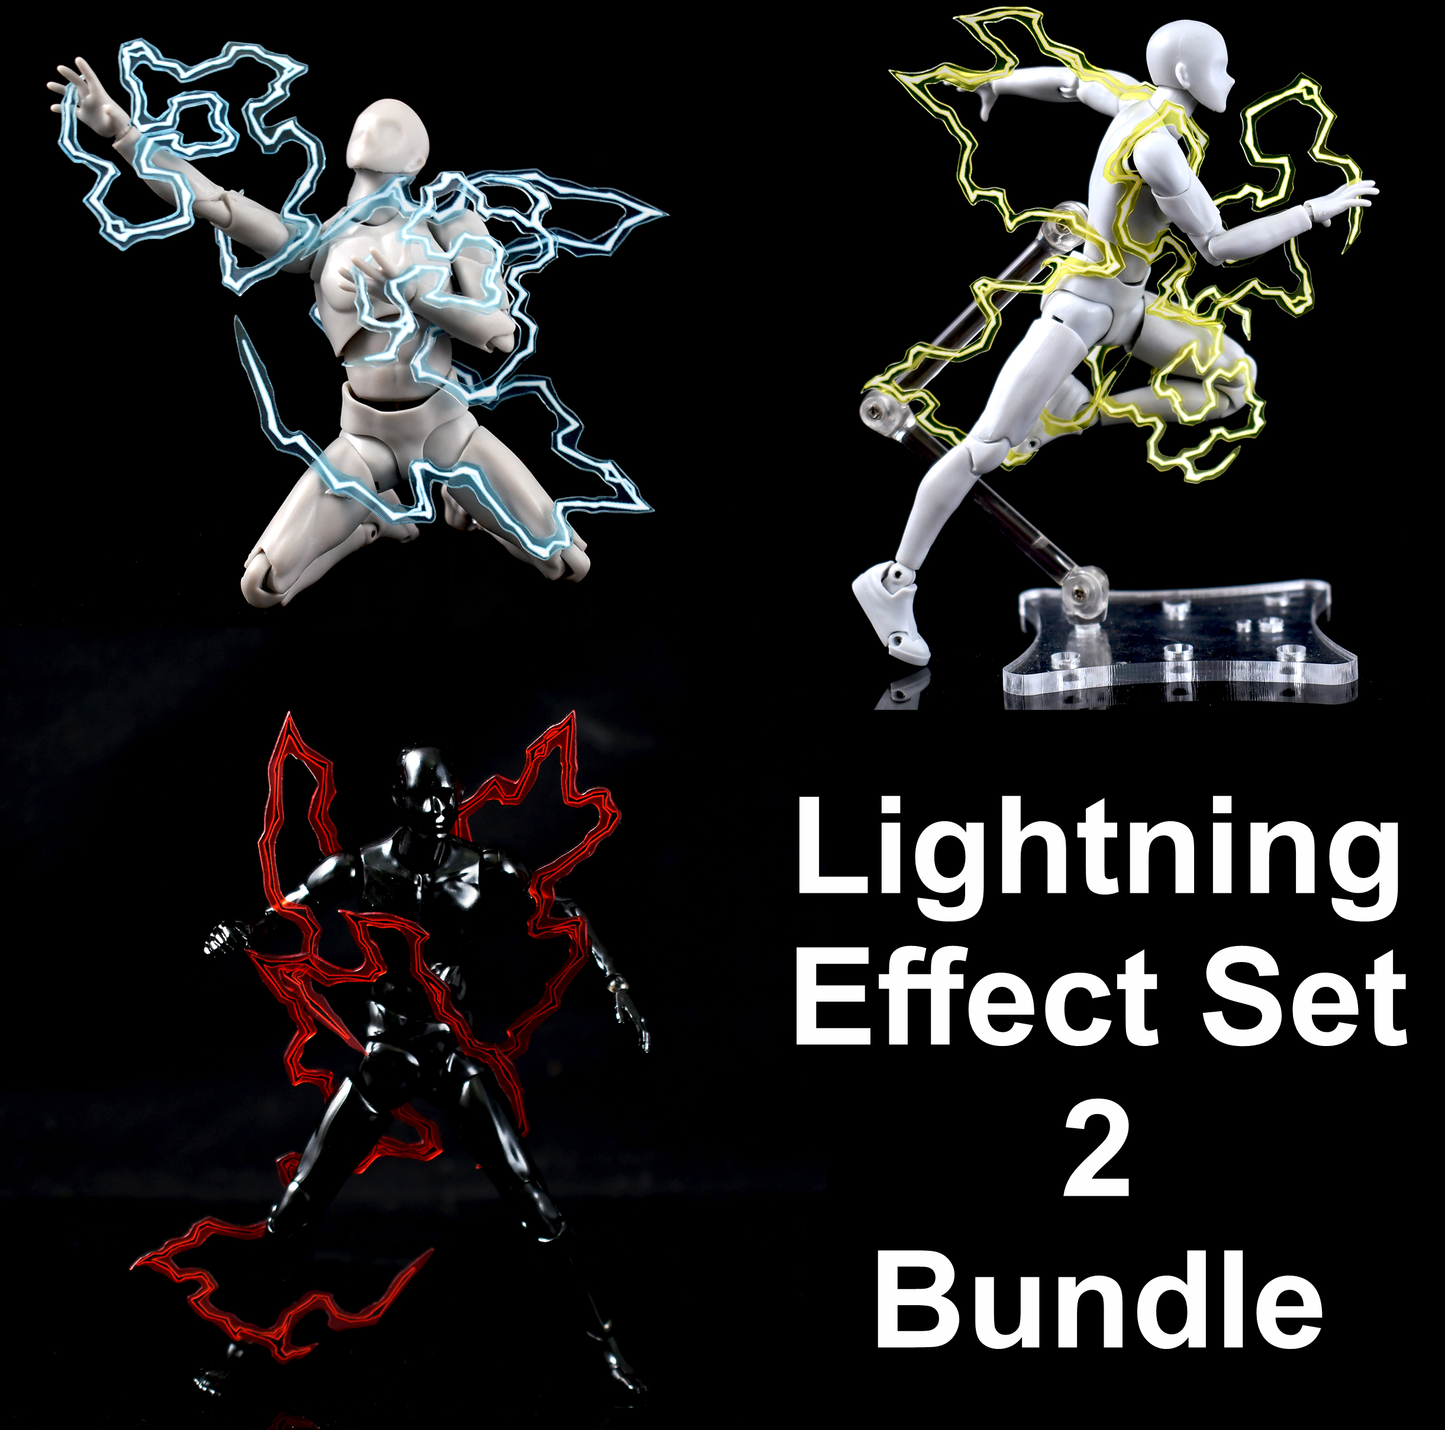 Lightning Effect Set 2 Bundle